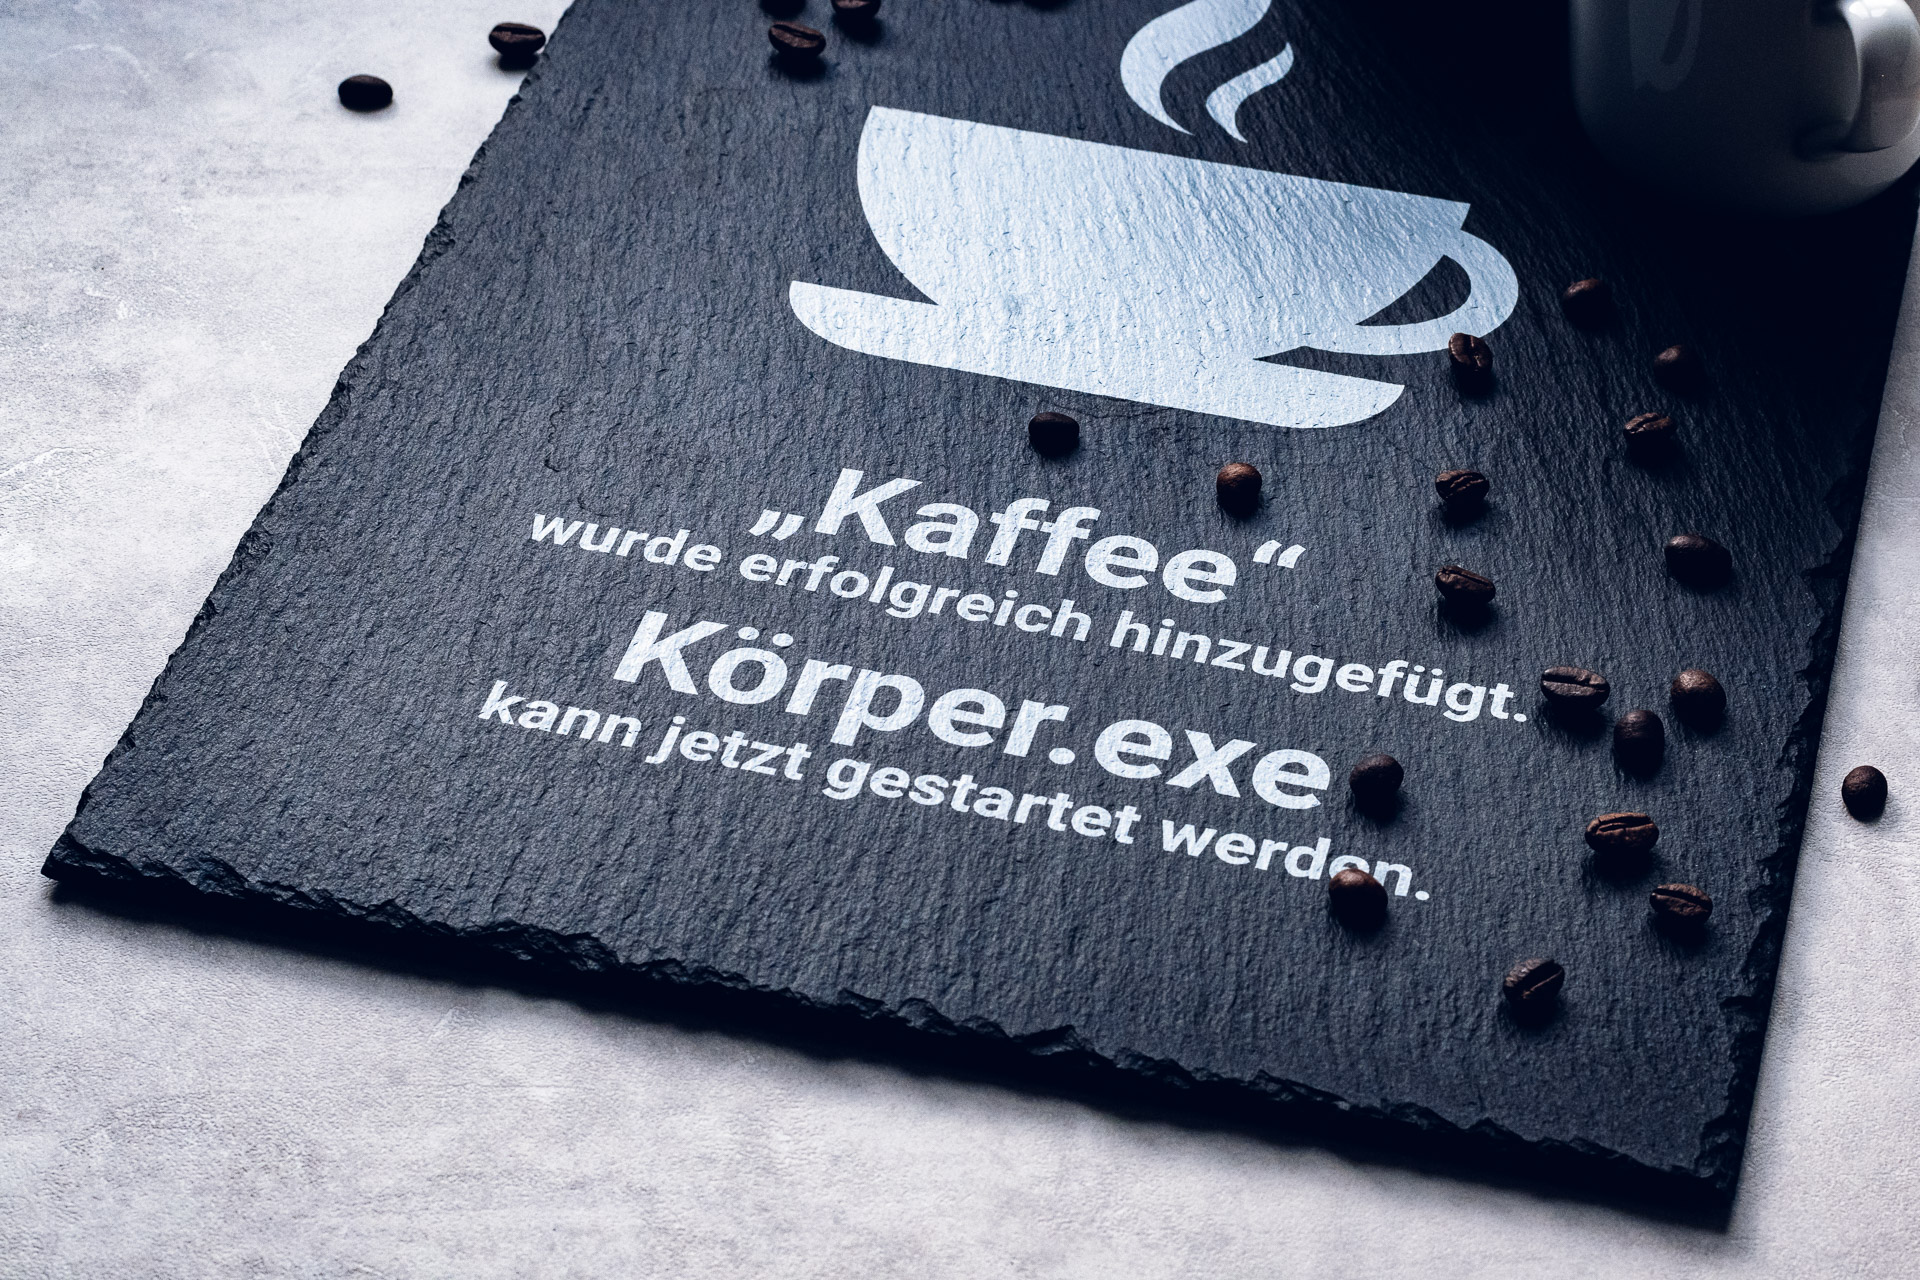 Eine bedruckte Schieferplatte für die Gastronomie. Der Spruch auf der Schieferplatte lautet: "Kaffee" wurde erfolgreich hinzugefügt. Körper.exe kann jetzt gestartet werden.